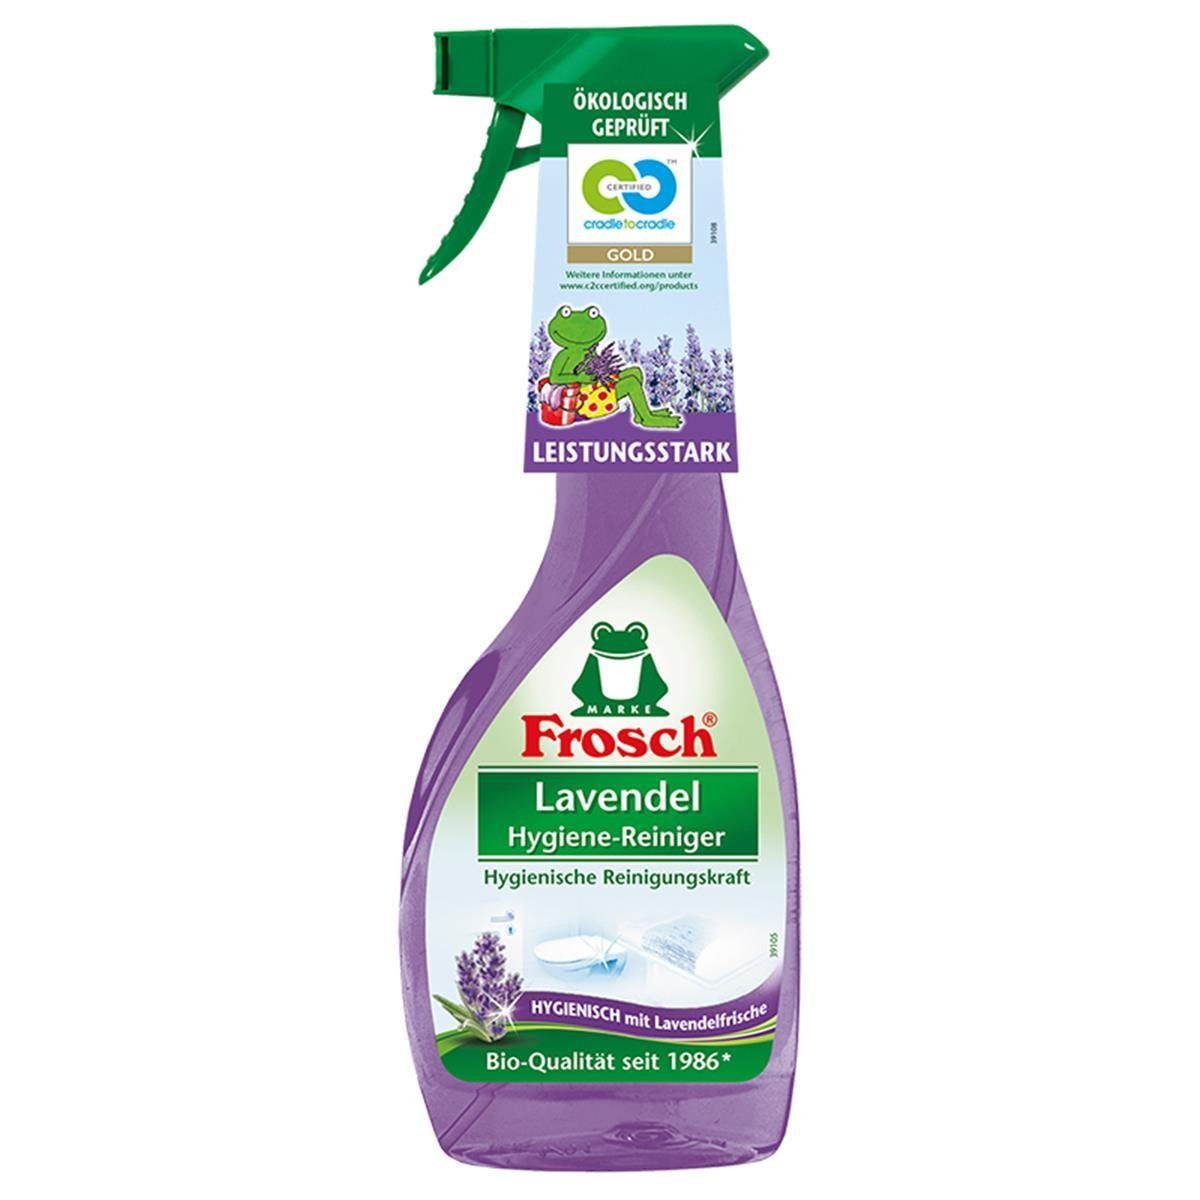 ml Lavendel Hygiene-Reiniger FROSCH Frosch 8x Sprühflasche Spezialwaschmittel 500